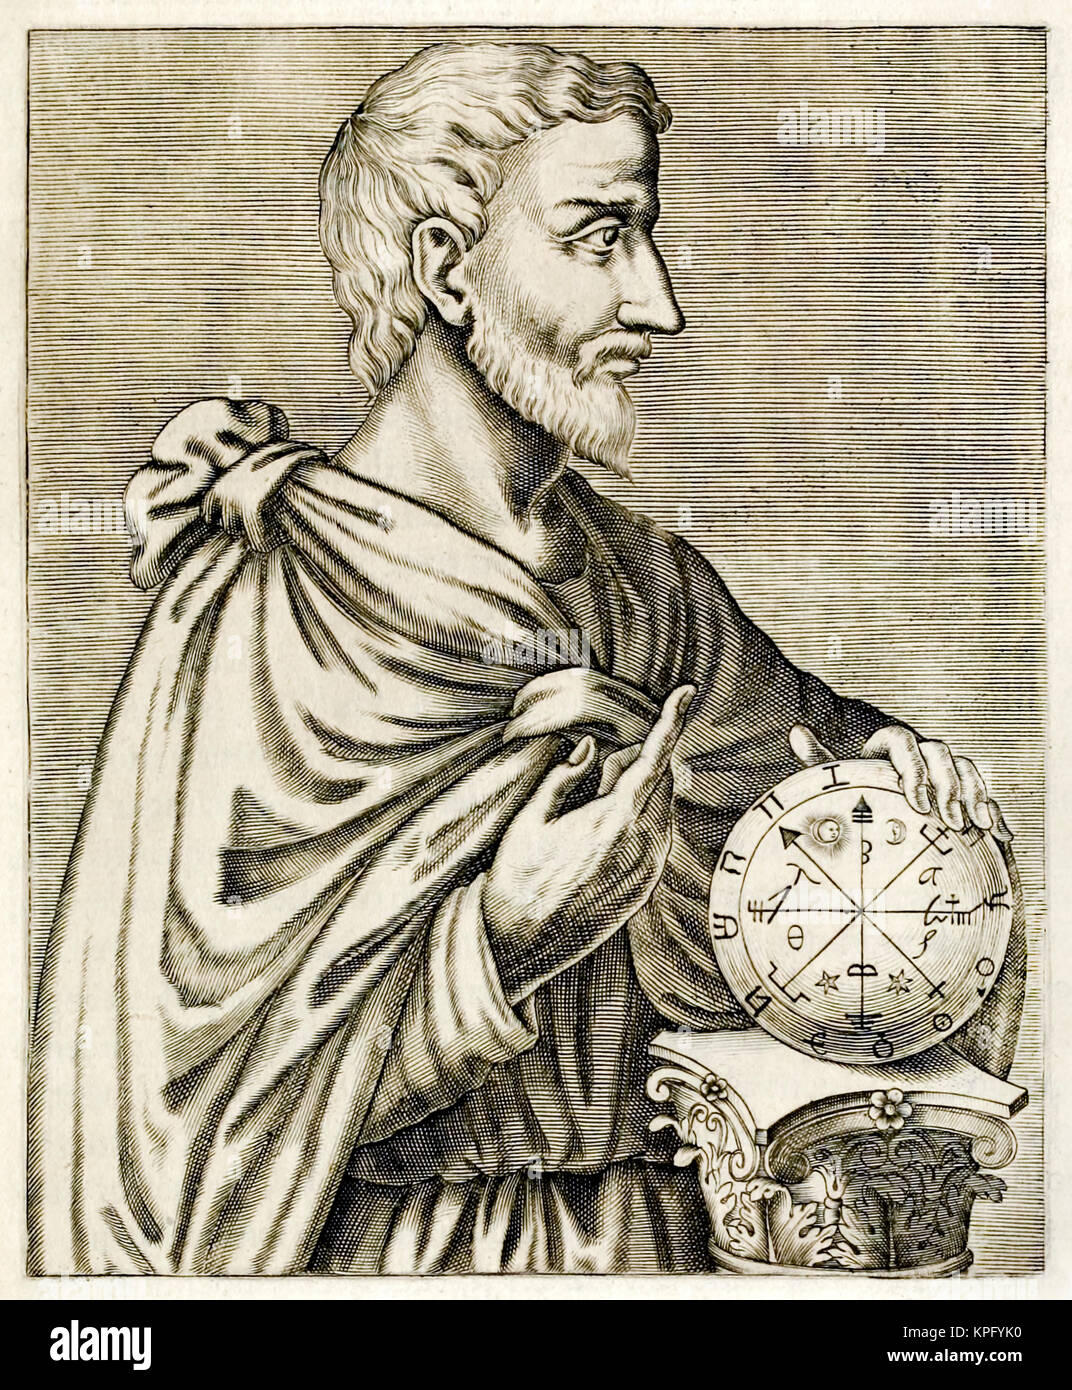 Pythagore de Samos (570-495BC) philosophe, mathématicien grec ionien, et fondateur de le mouvement religieux appelé Pythagoreanism. Gravure tirée de "vrai"… Portraits d'André Thévet (1516-1590) publié en 1584. Voir la description pour plus d'informations. Banque D'Images